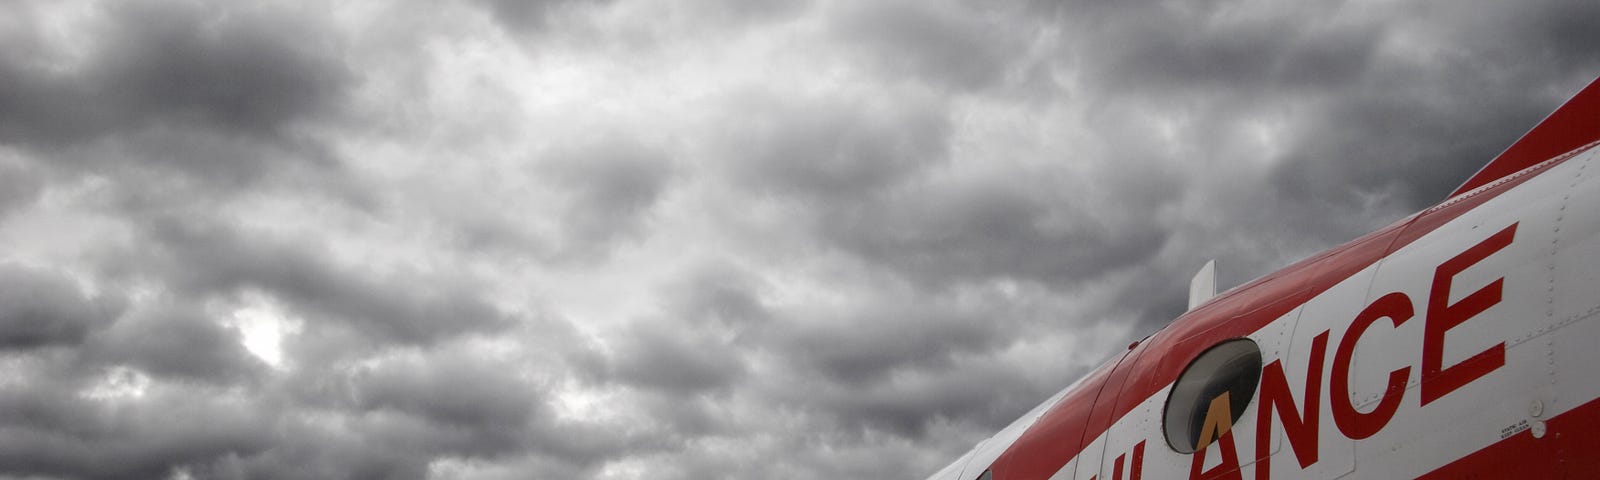 An air ambulance beneath cloudy skies.